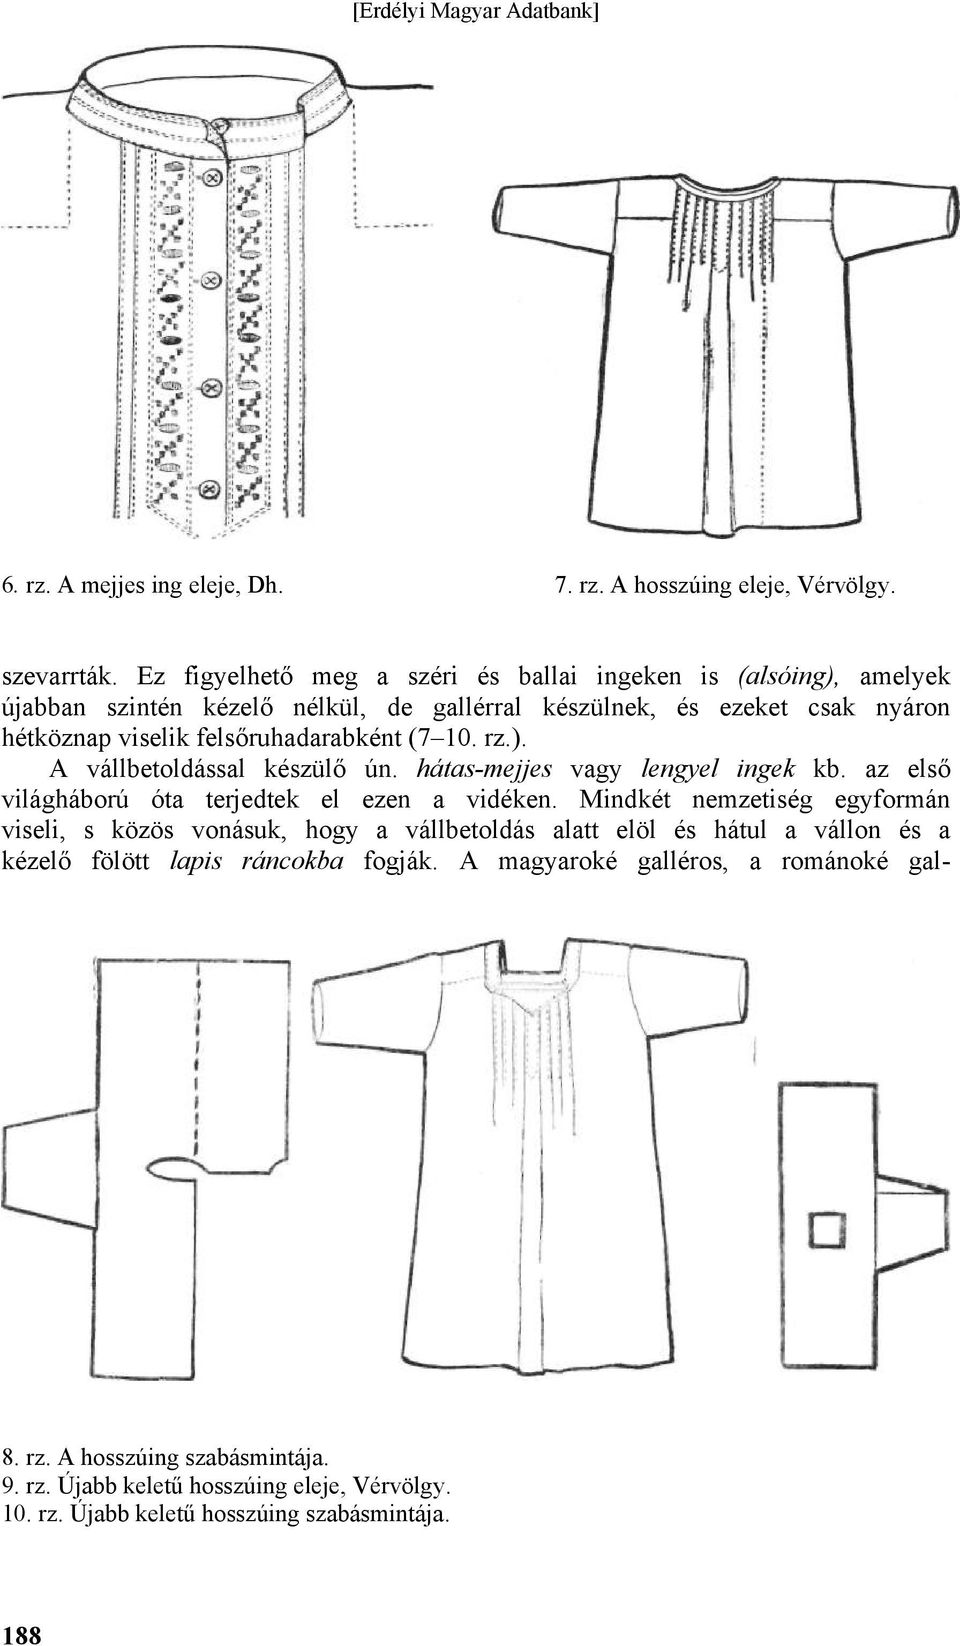 felsőruhadarabként (7 10. rz.). A vállbetoldással készülő ún. hátas-mejjes vagy lengyel ingek kb. az első világháború óta terjedtek el ezen a vidéken.